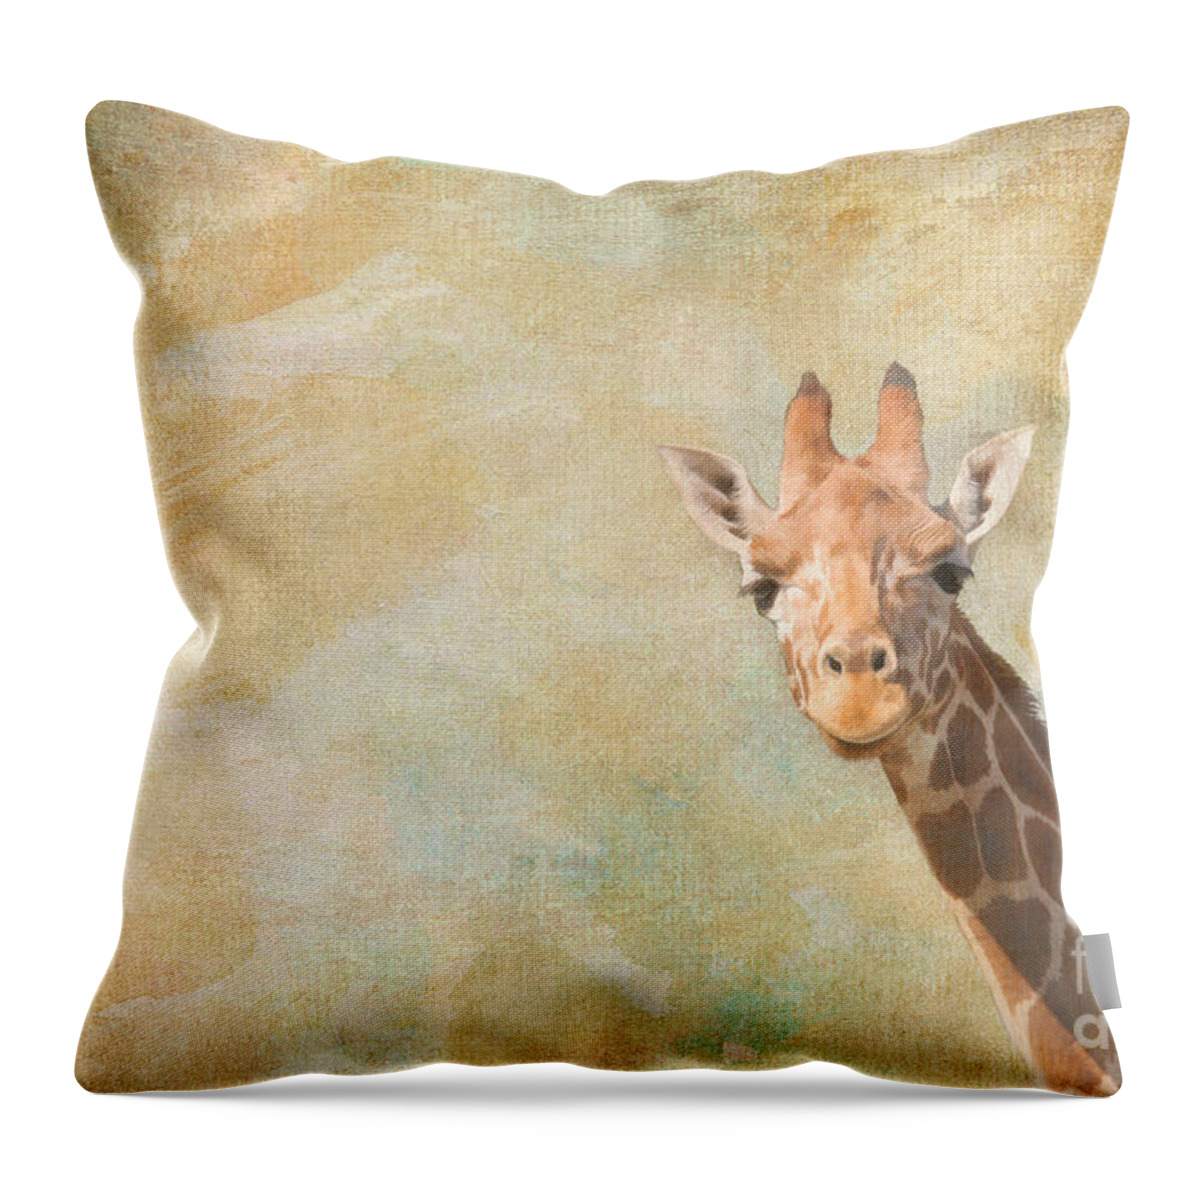 Giraffe Throw Pillow featuring the digital art Giraffe Art by Jayne Carney